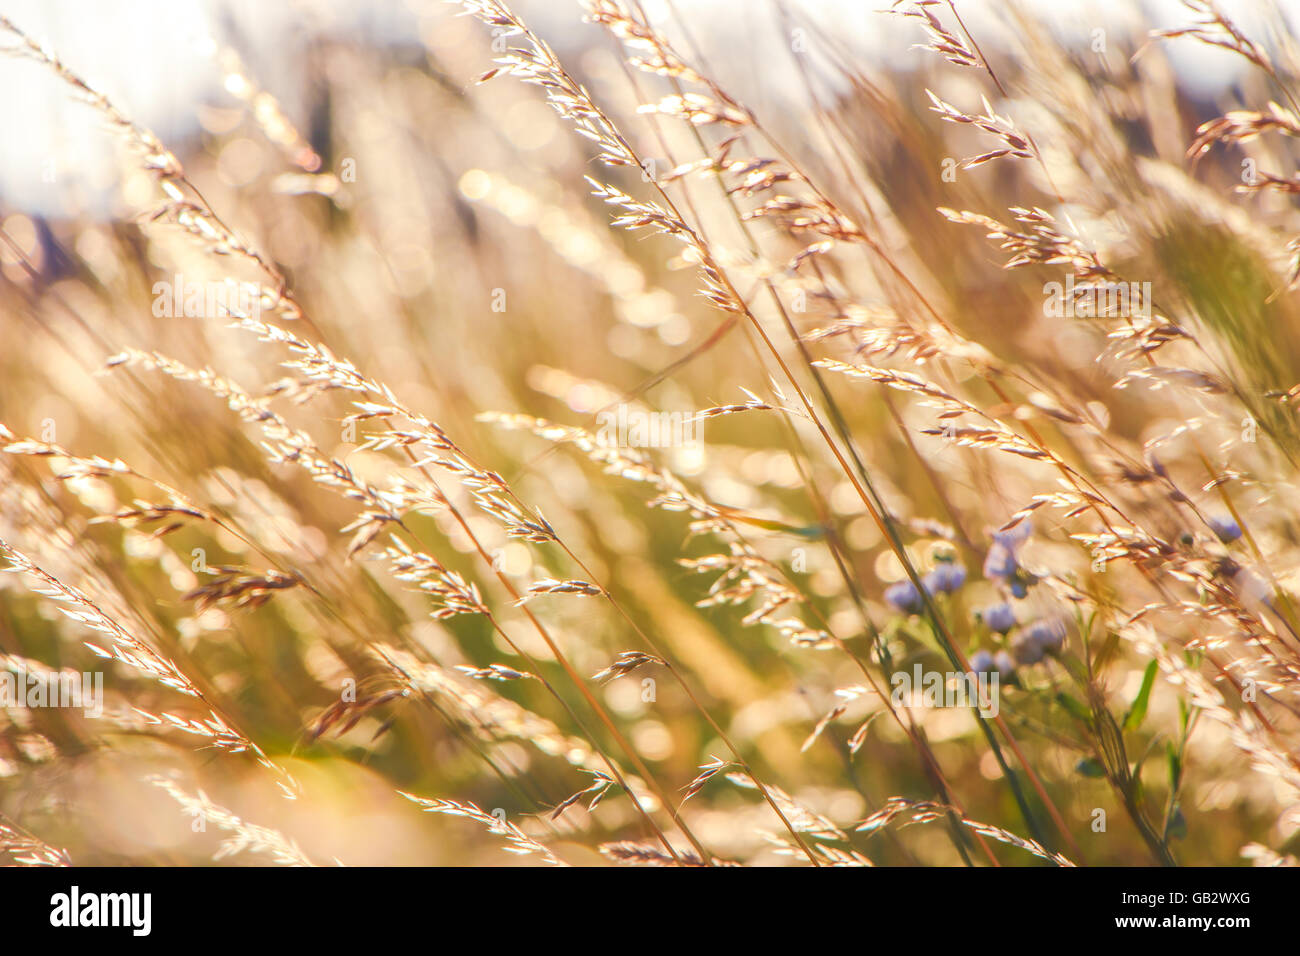 Golden chicco di frumento selvatico su sunrise close up Foto Stock